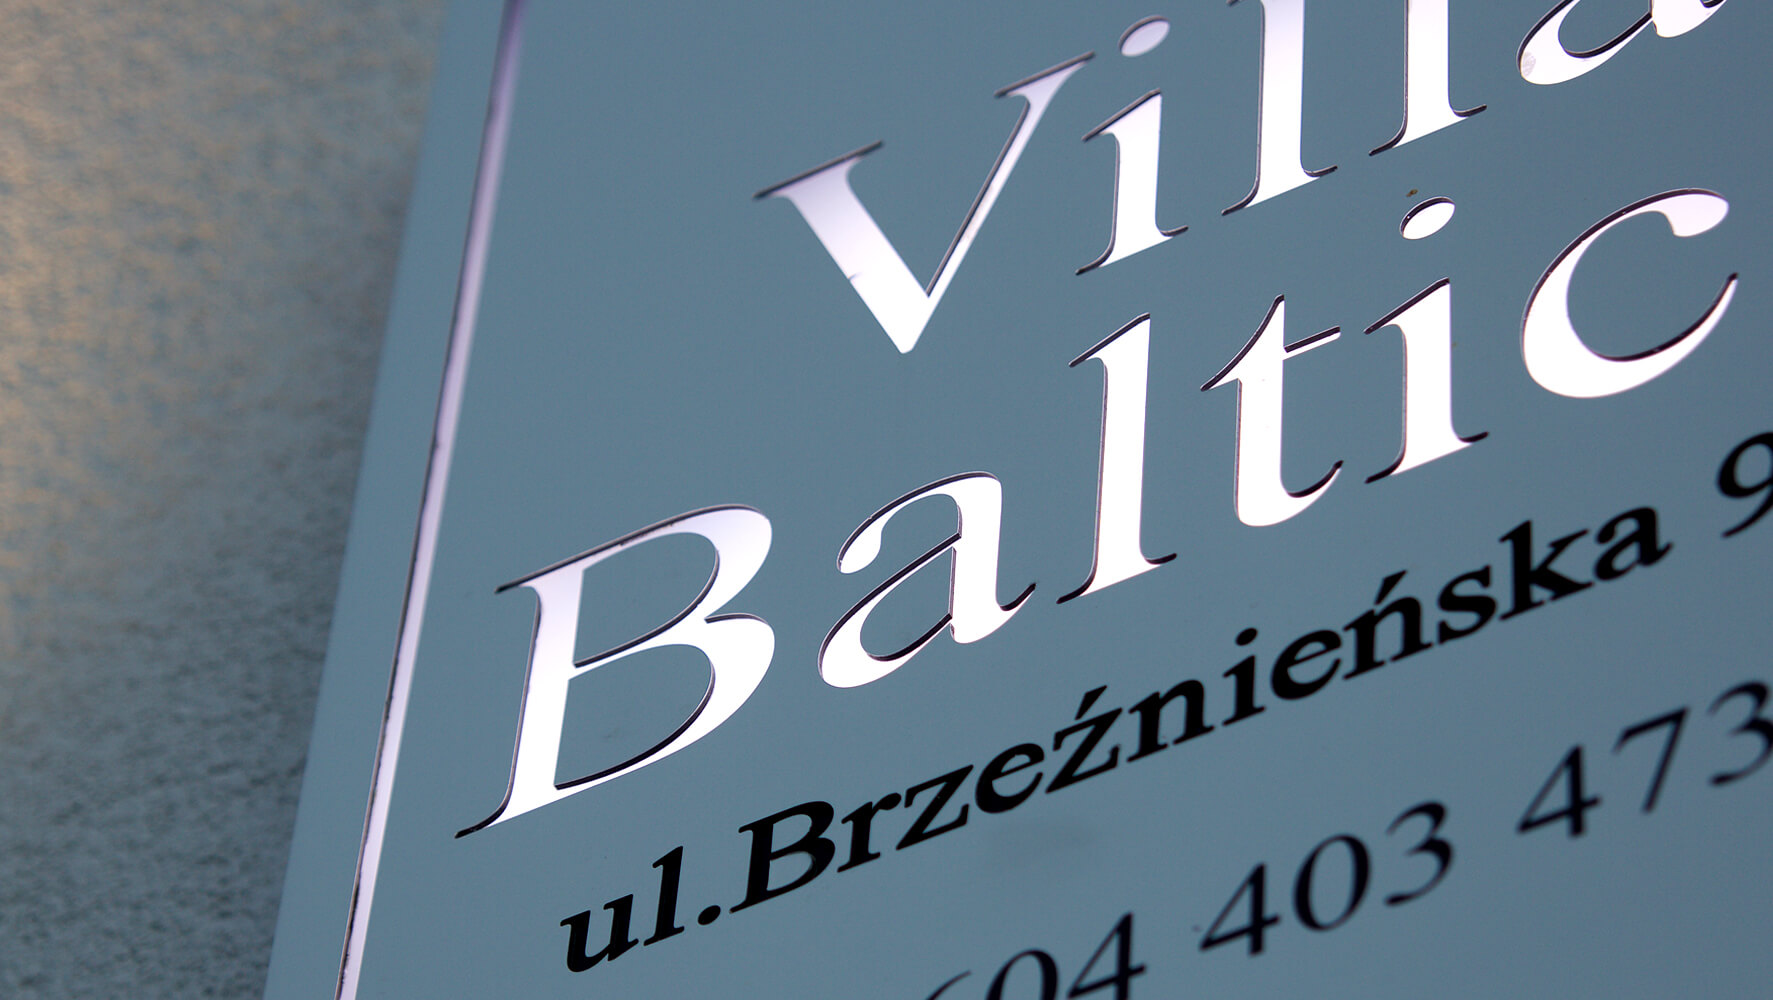 Villa Baltica - Villa Baltica - company's signboard on a dibond coffer